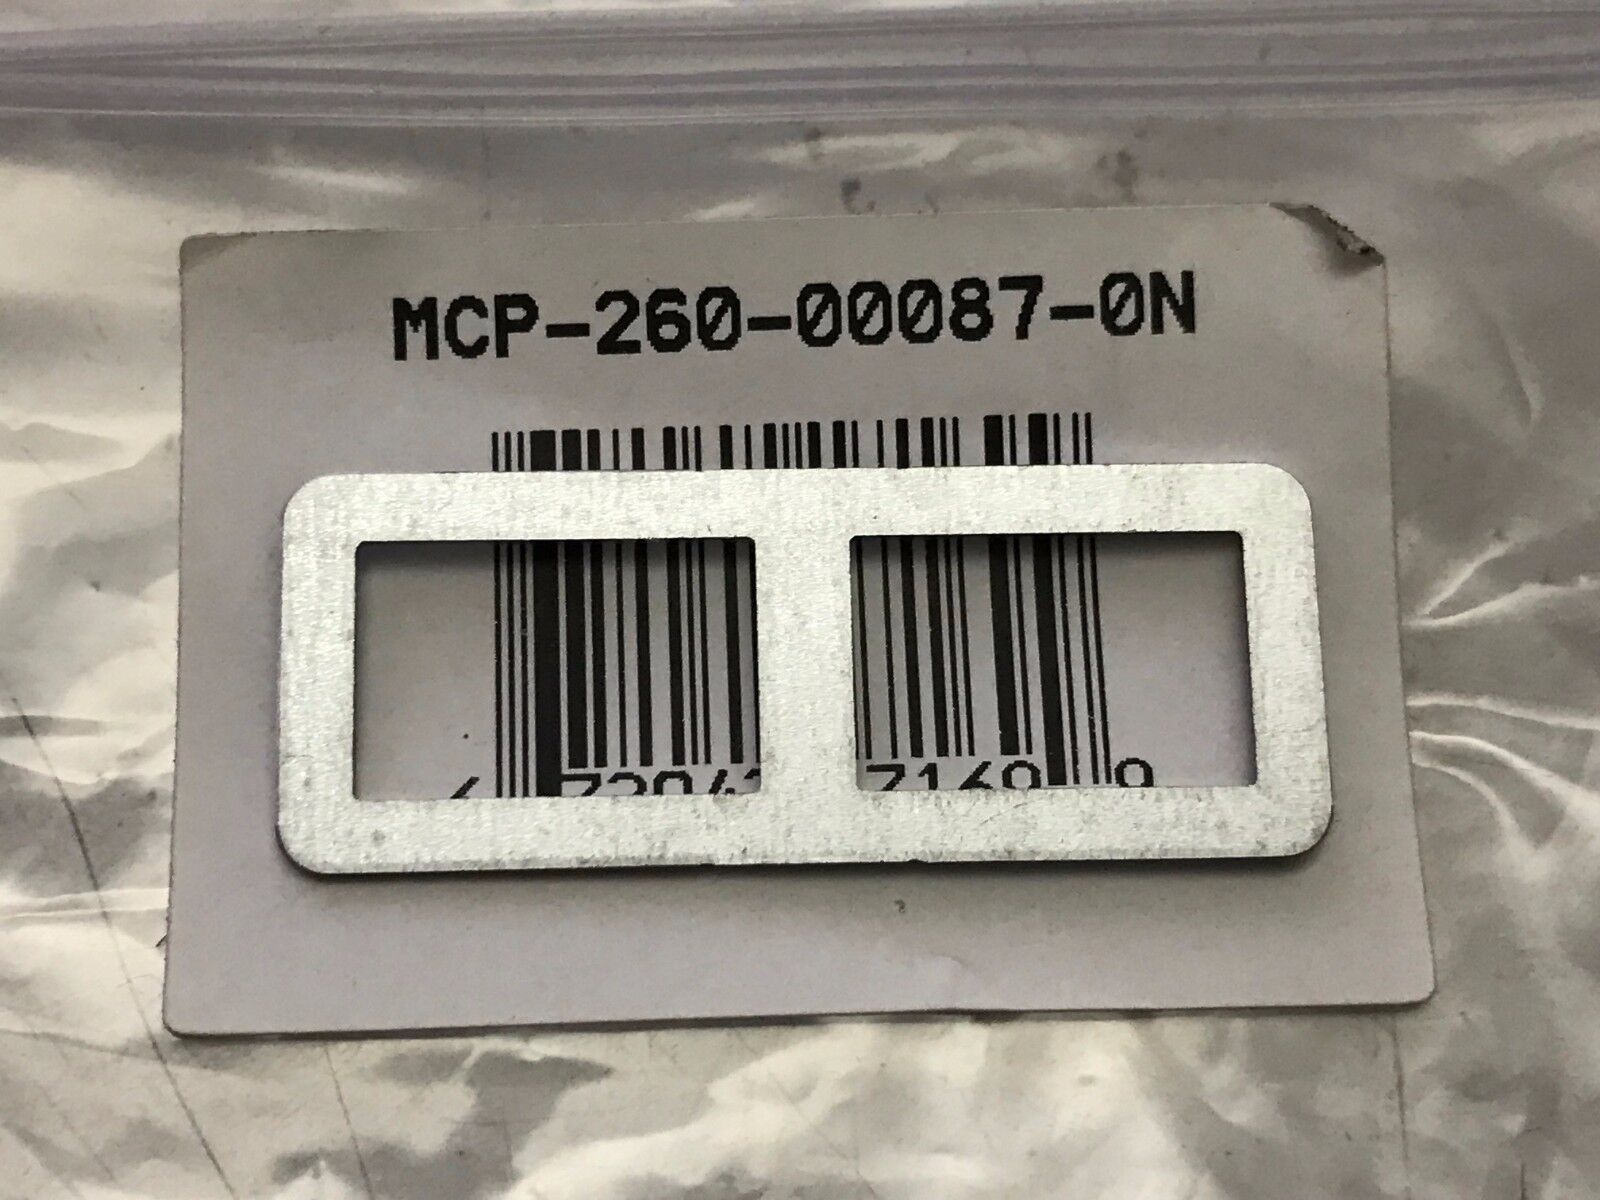 SUPERMICRO MCP-260-00087-0N